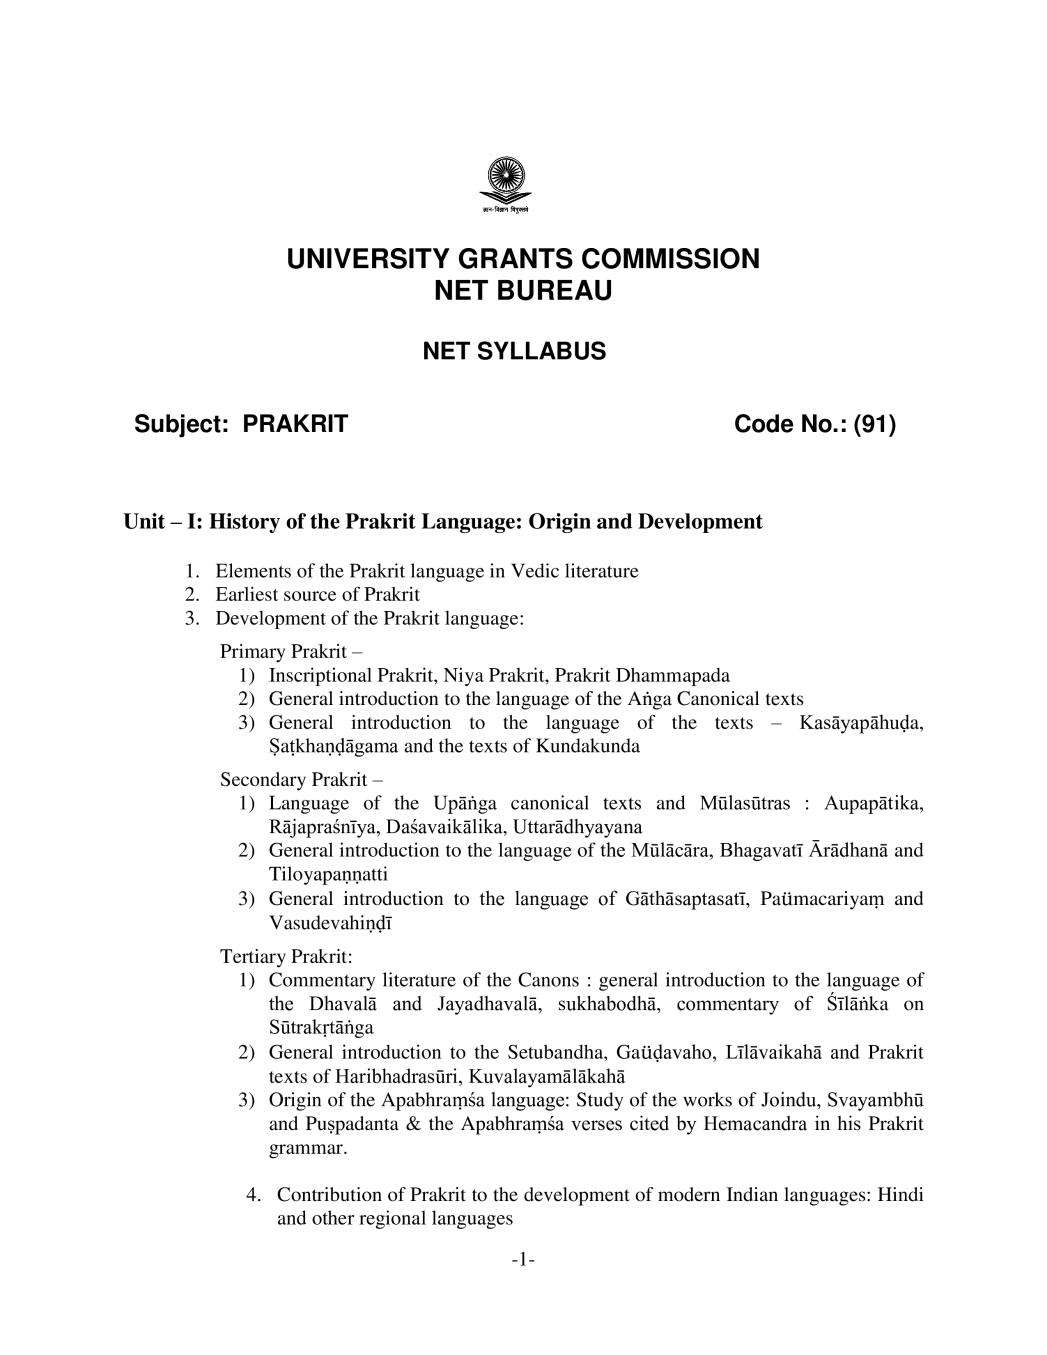 UGC NET Syllabus for Prakrit 2020 - Page 1